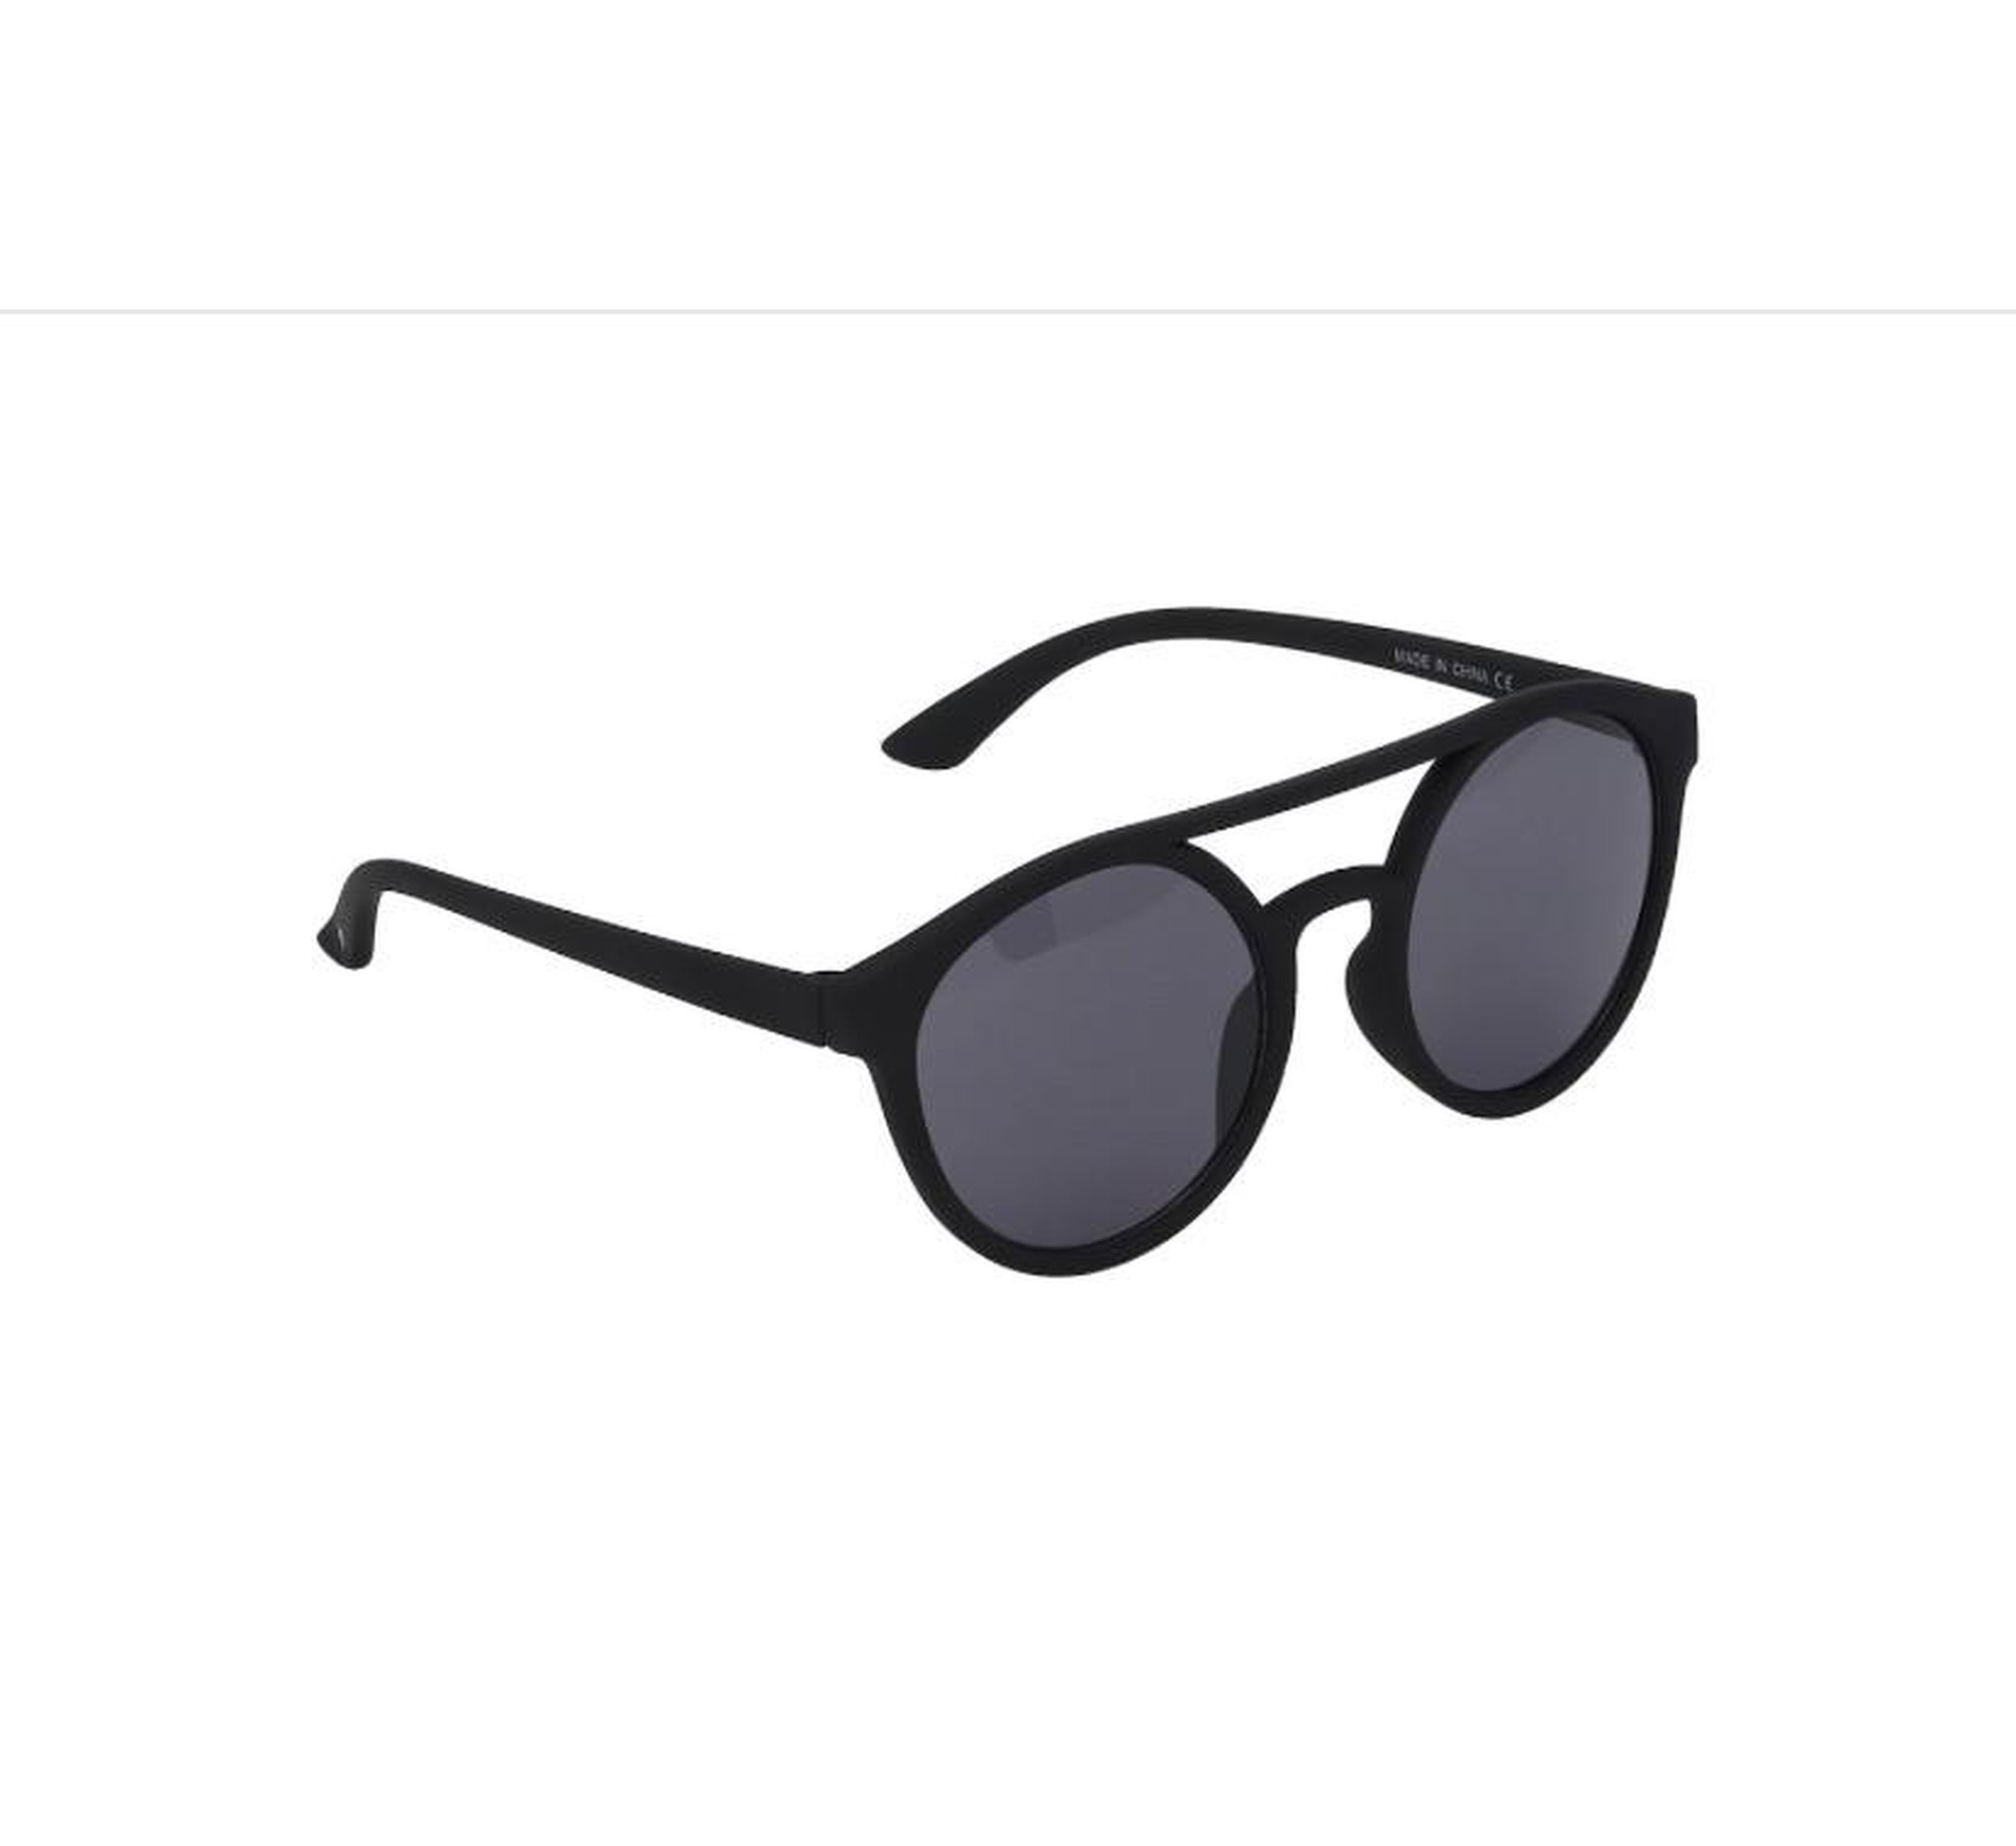 Φασκόμηλο - γυαλιά ηλίου προστασίας από υπεριώδη ακτινοβολία-Sunglasses-MOLO-jellyfishkids.com.cy